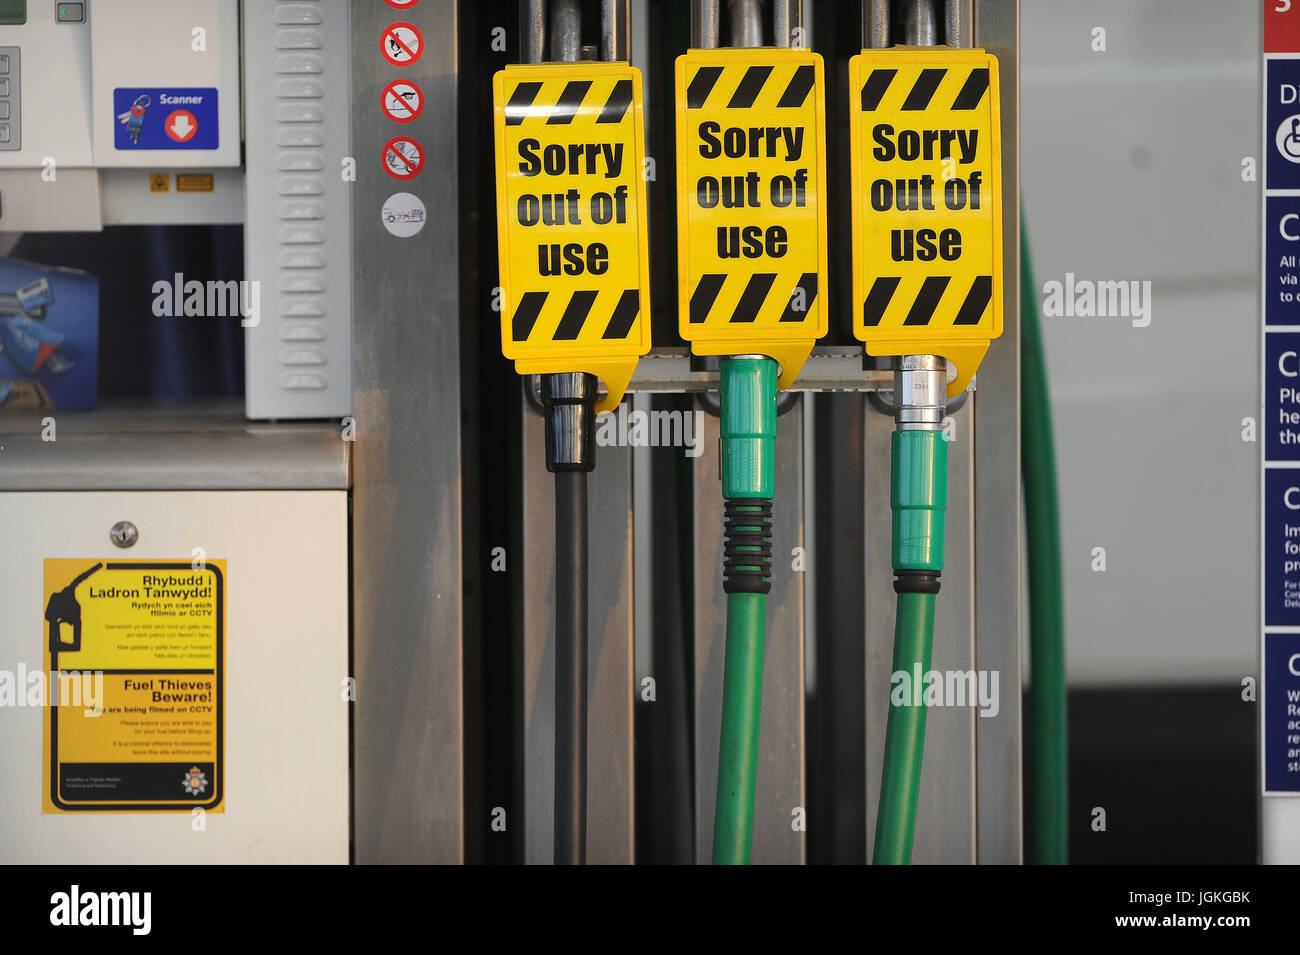 Fuori uso le pompe del carburante durante una scarsità di combustibile in un supermercato stazione di riempimento benzina. Foto Stock